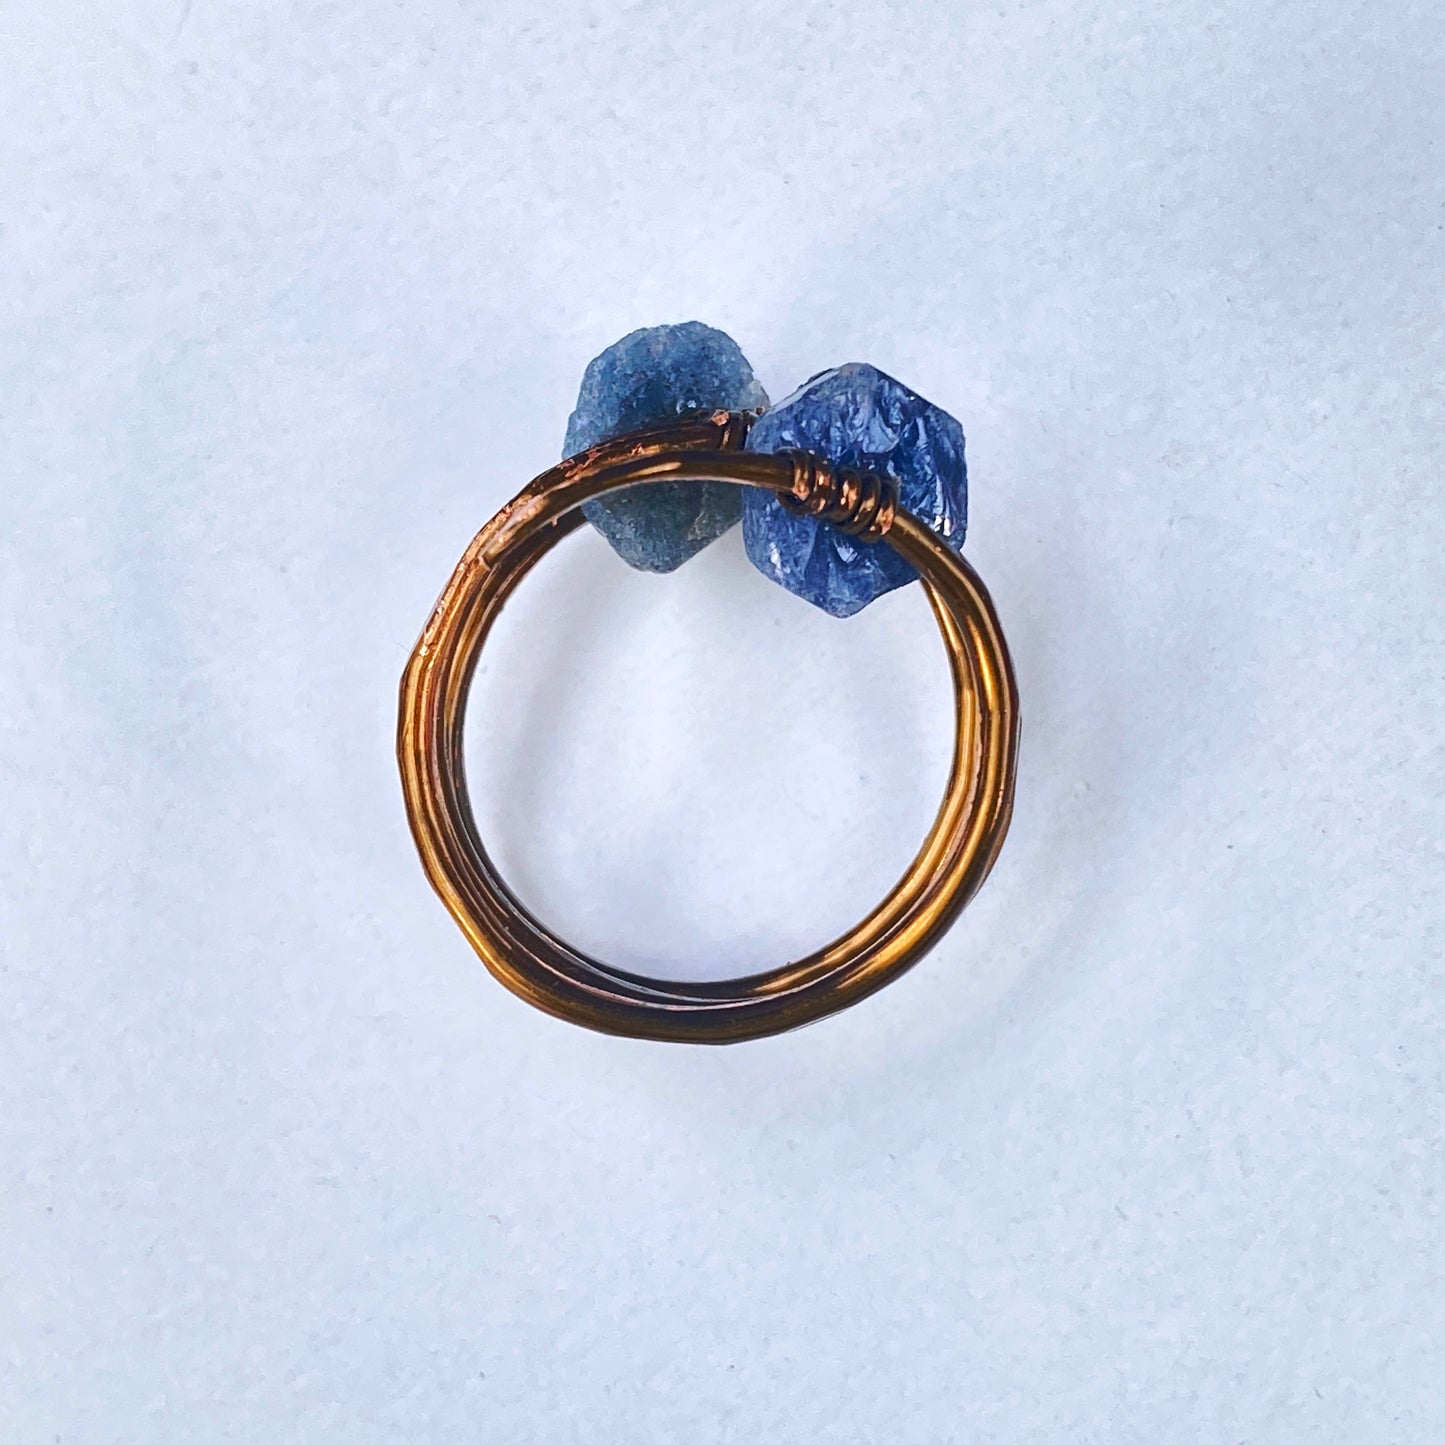 Blue Sapphire gemstone on hand hammered Bronze Ring.